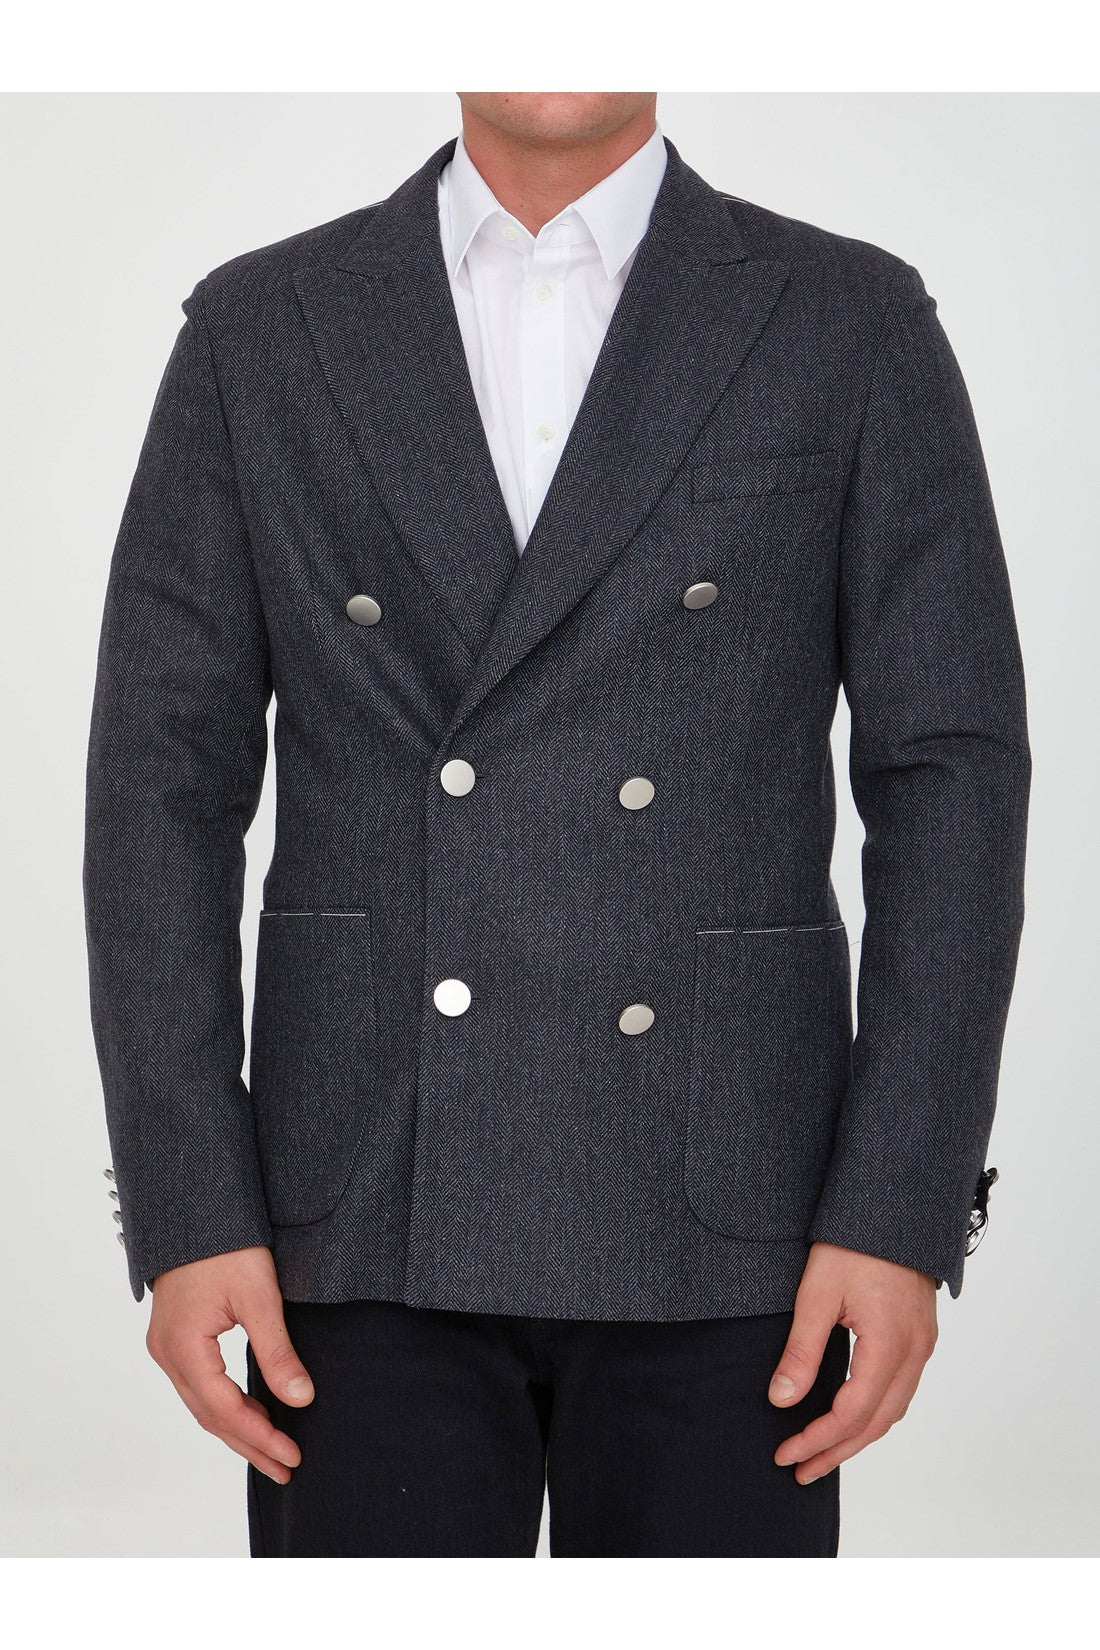 Grey wool jacket